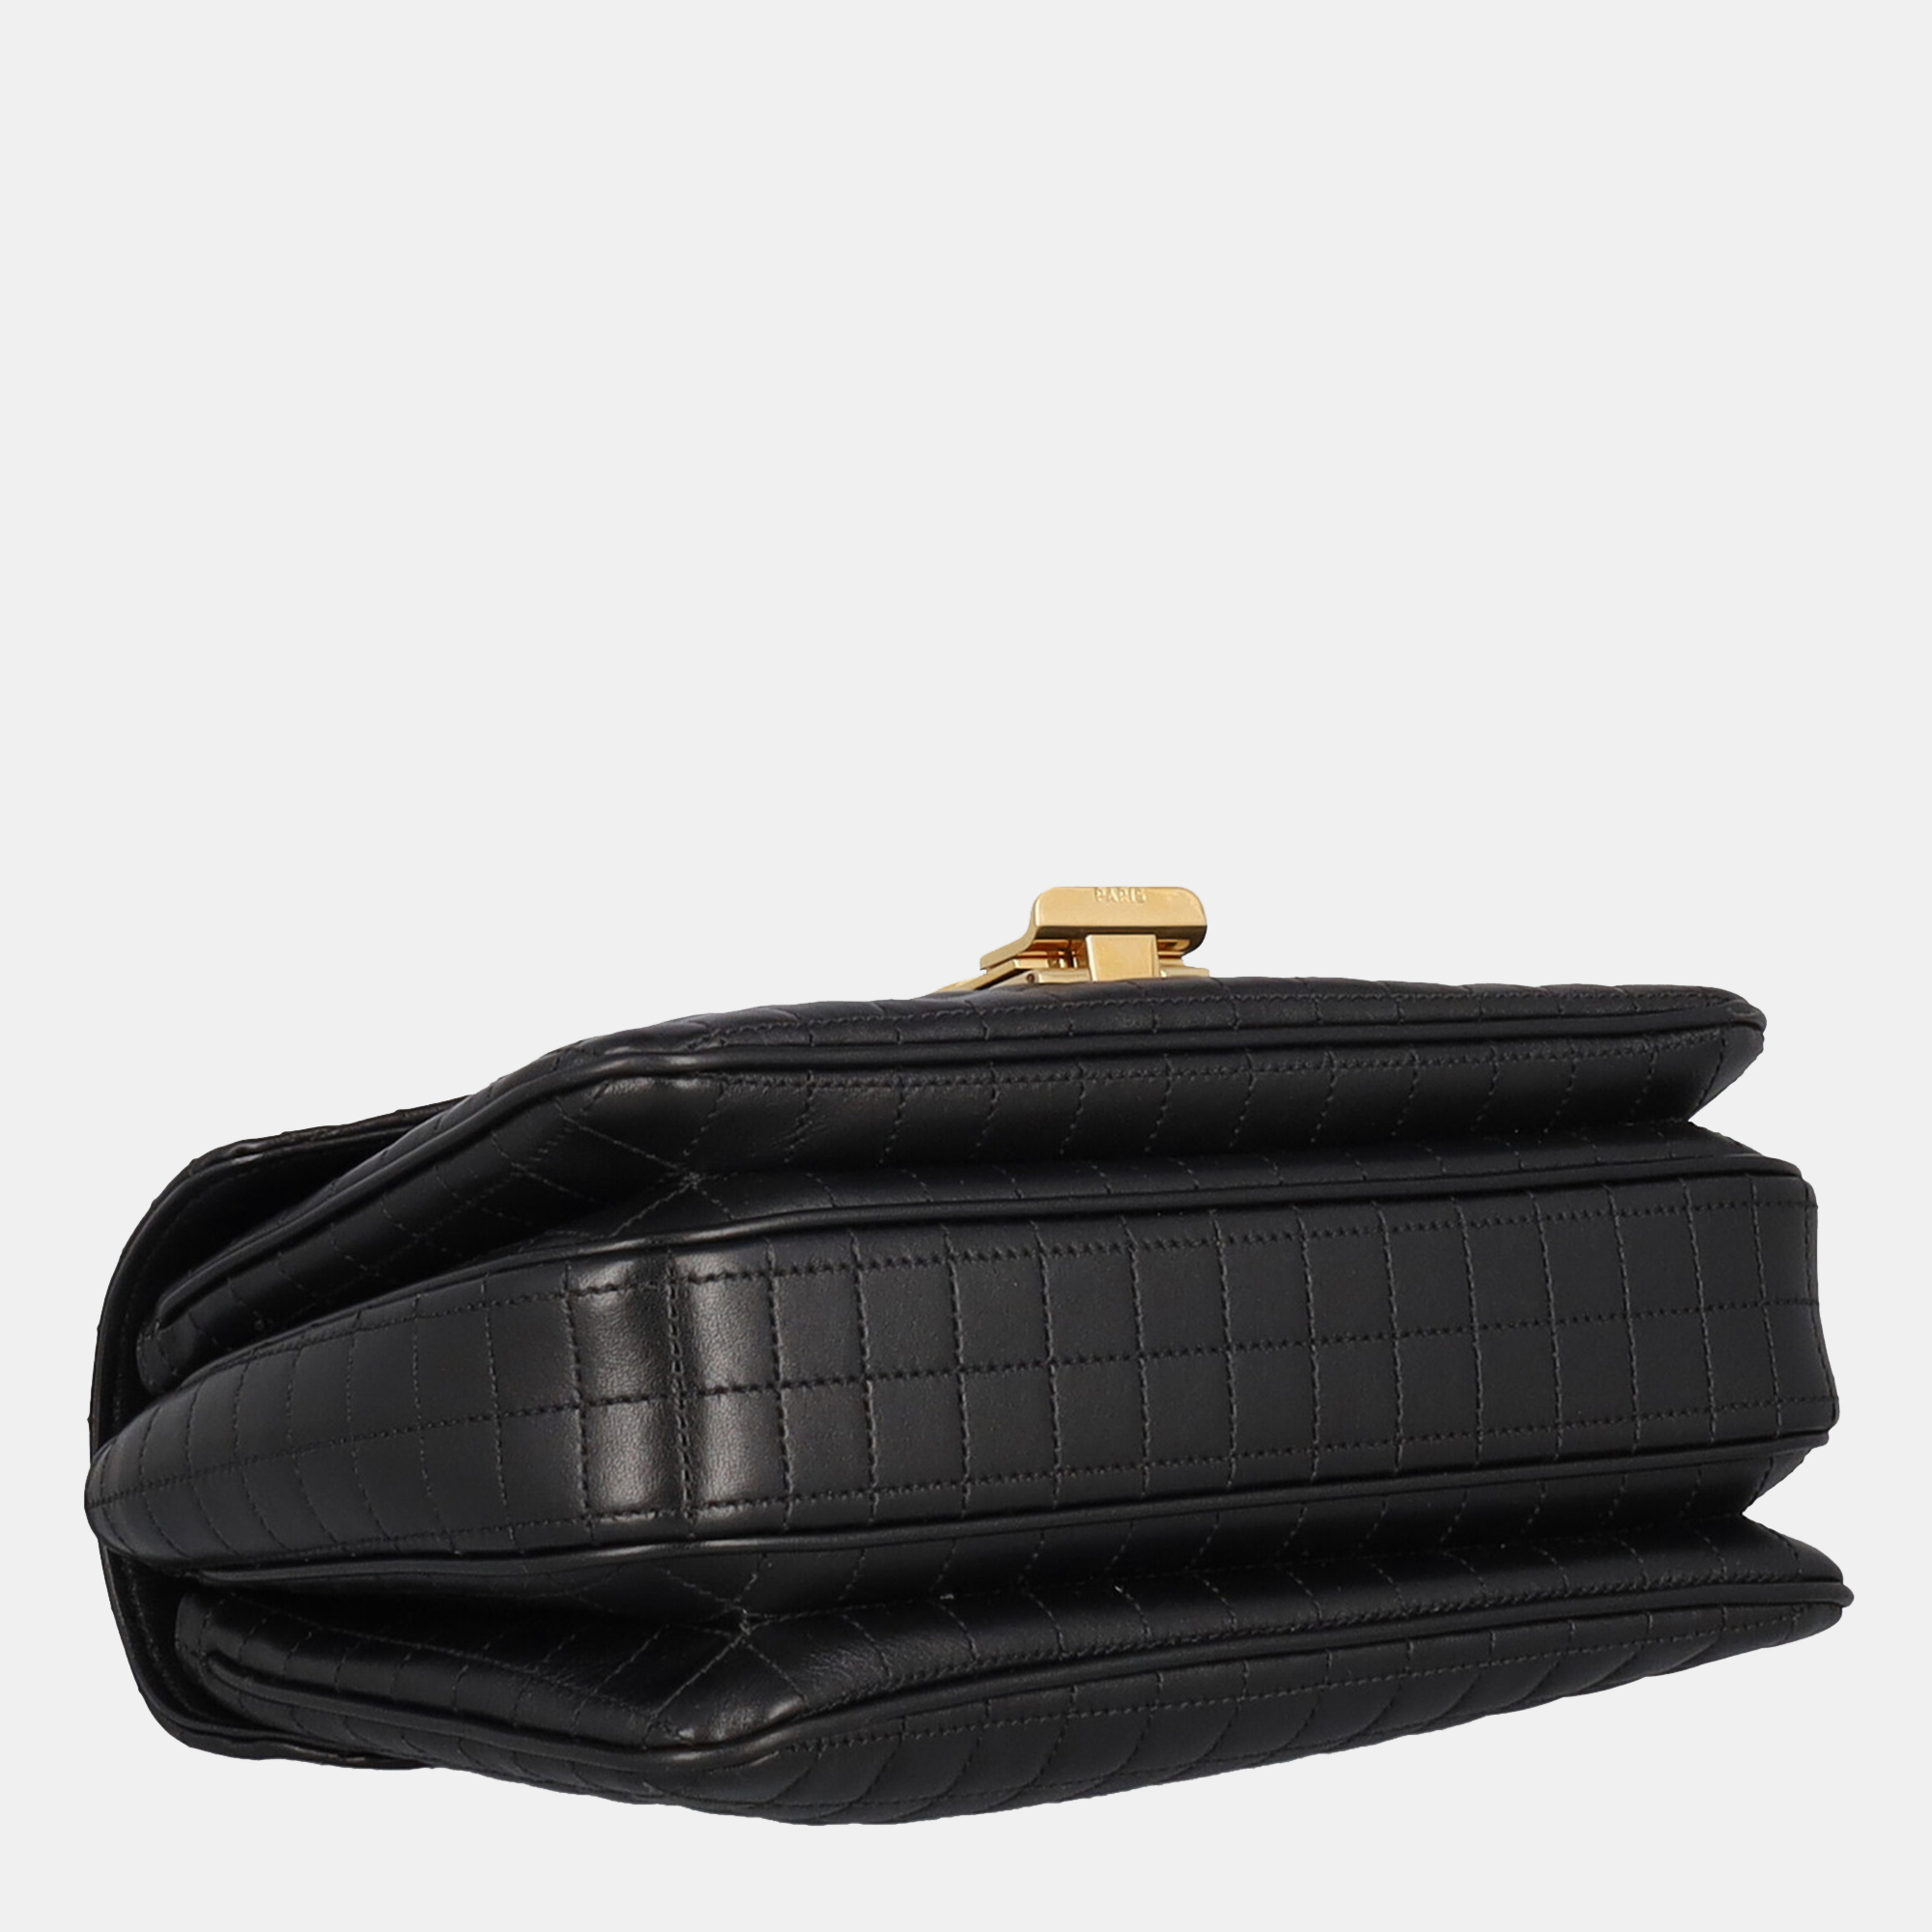 Celine  Women's Leather Cross Body Bag - Black - One Size